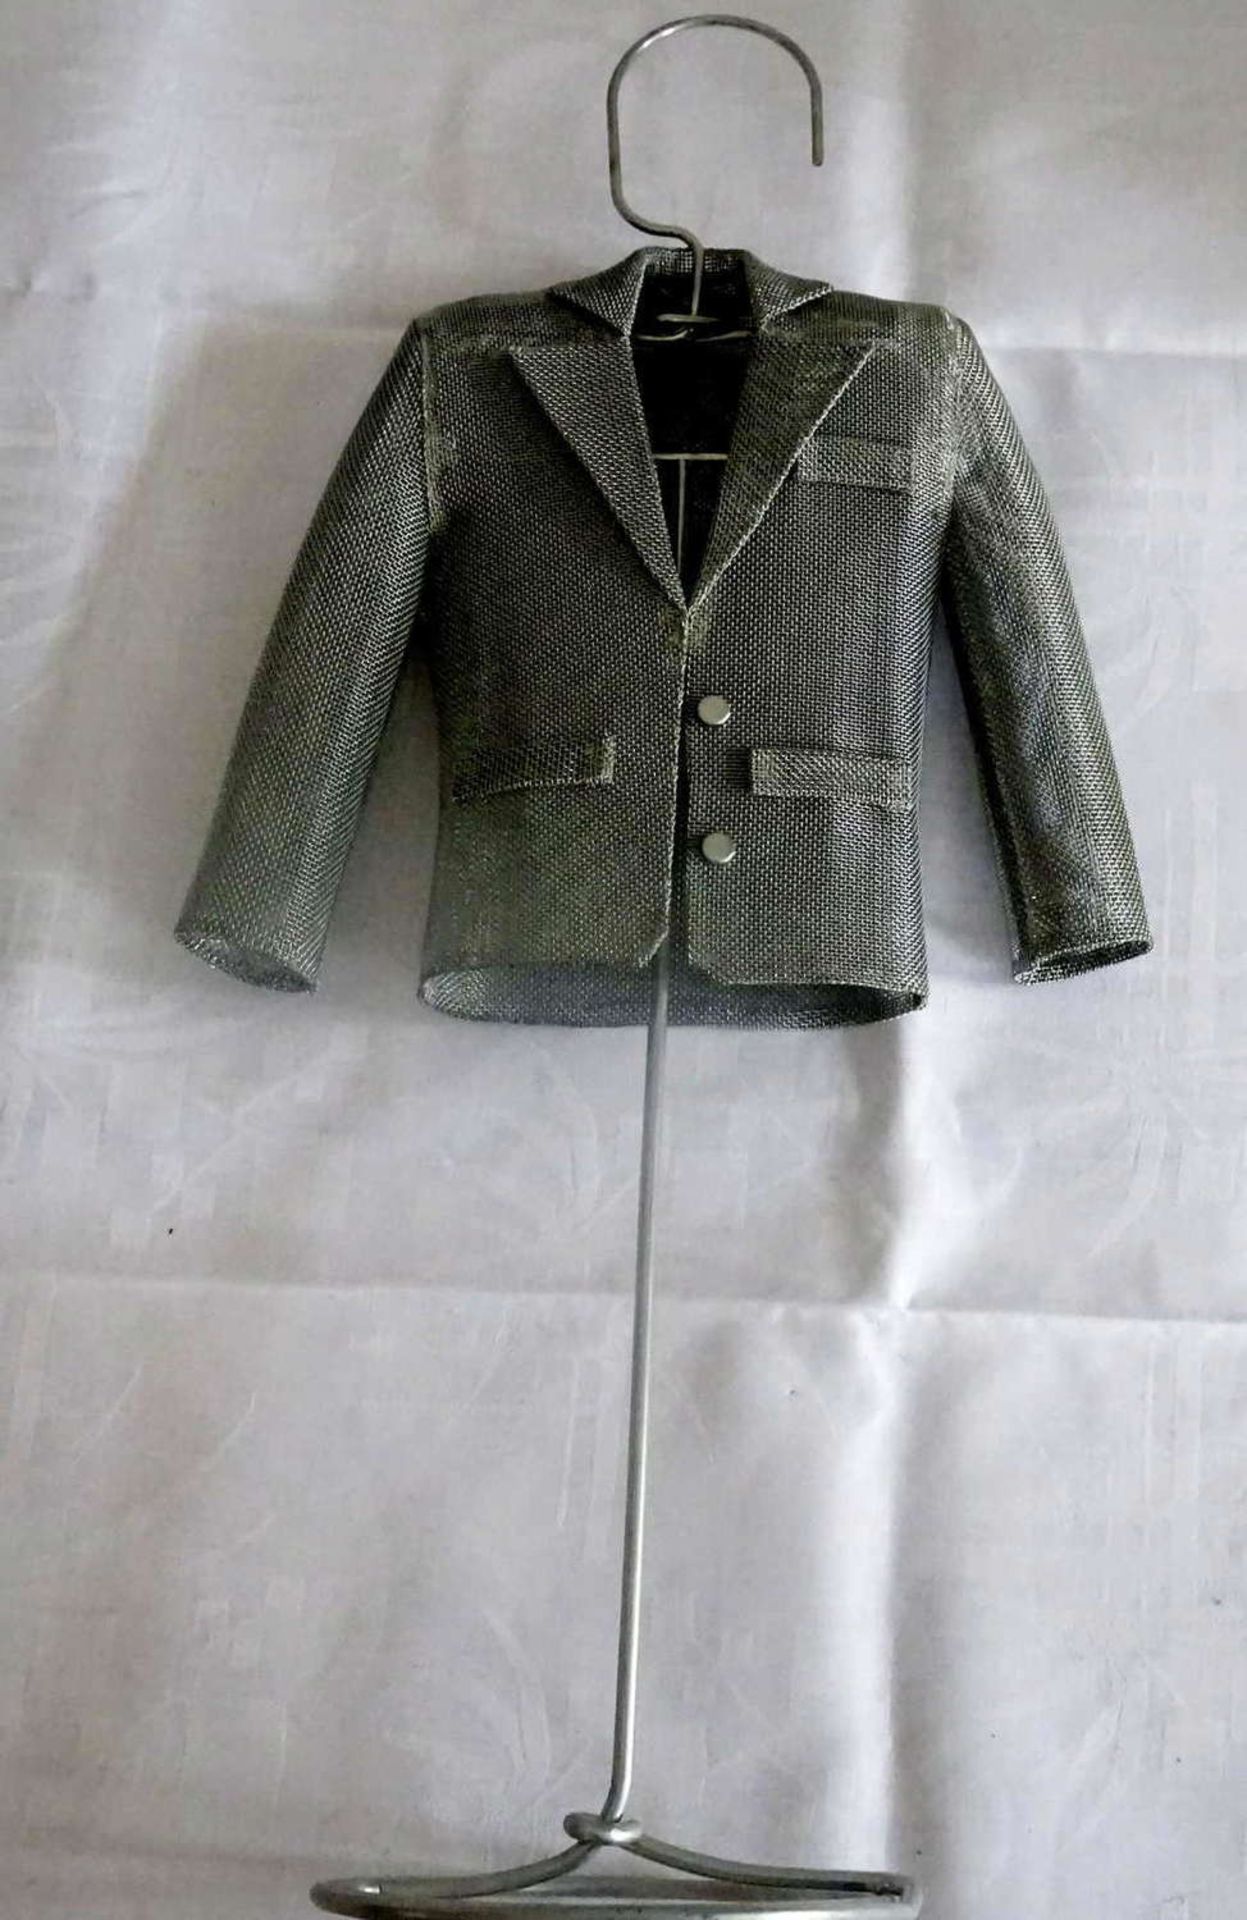 Dekoständer mit Jacke aus Metall. Höhe ca. 56 cm. Sehr dekorativ!Decorative stand with jacket made